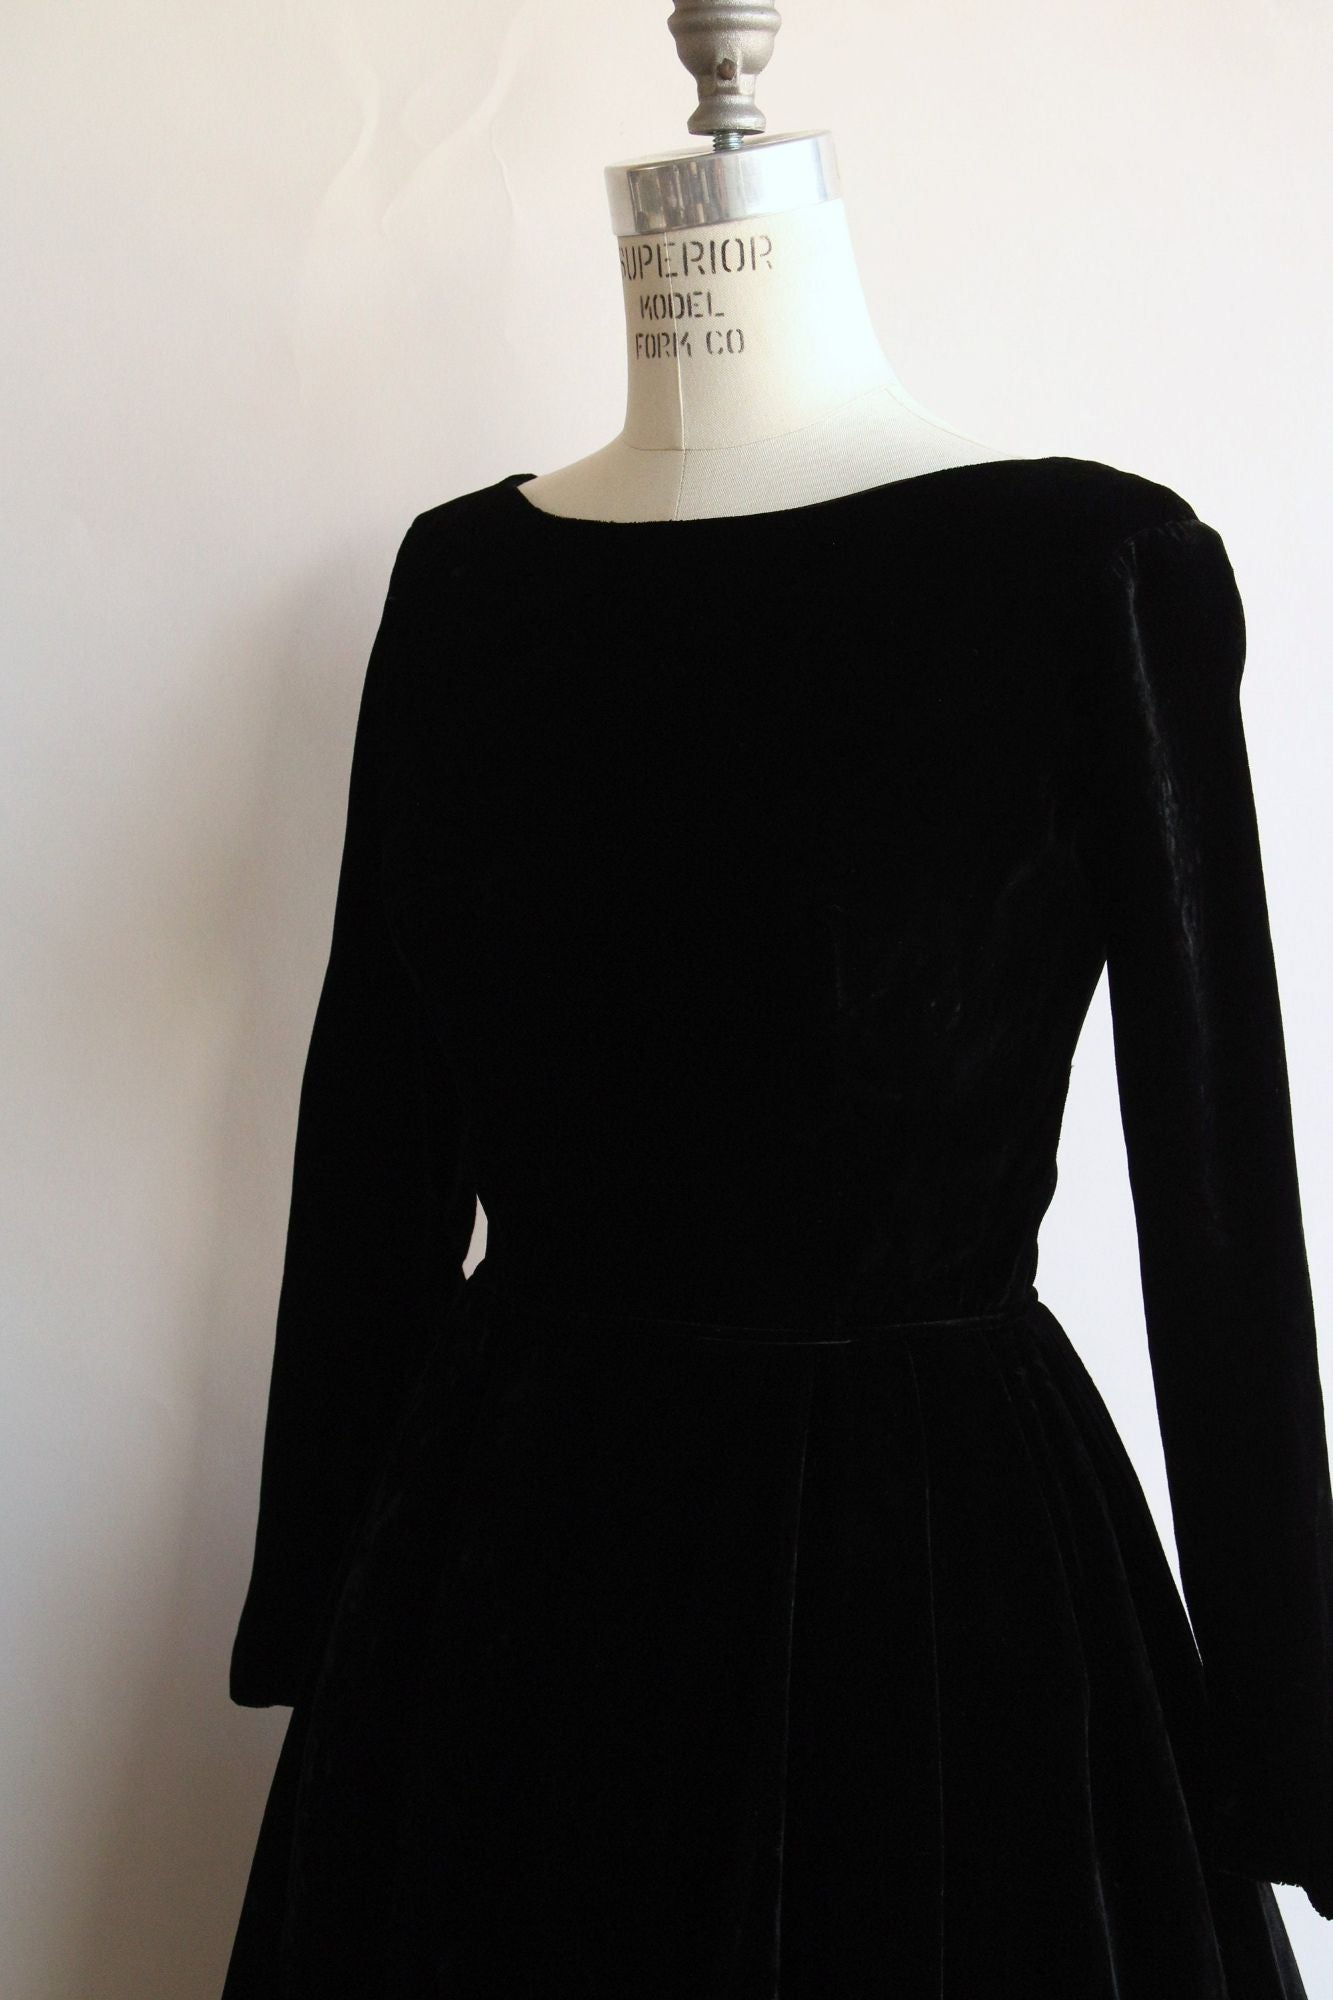 Vintage 1950s Dress in Black Velvet with Pellon Lining